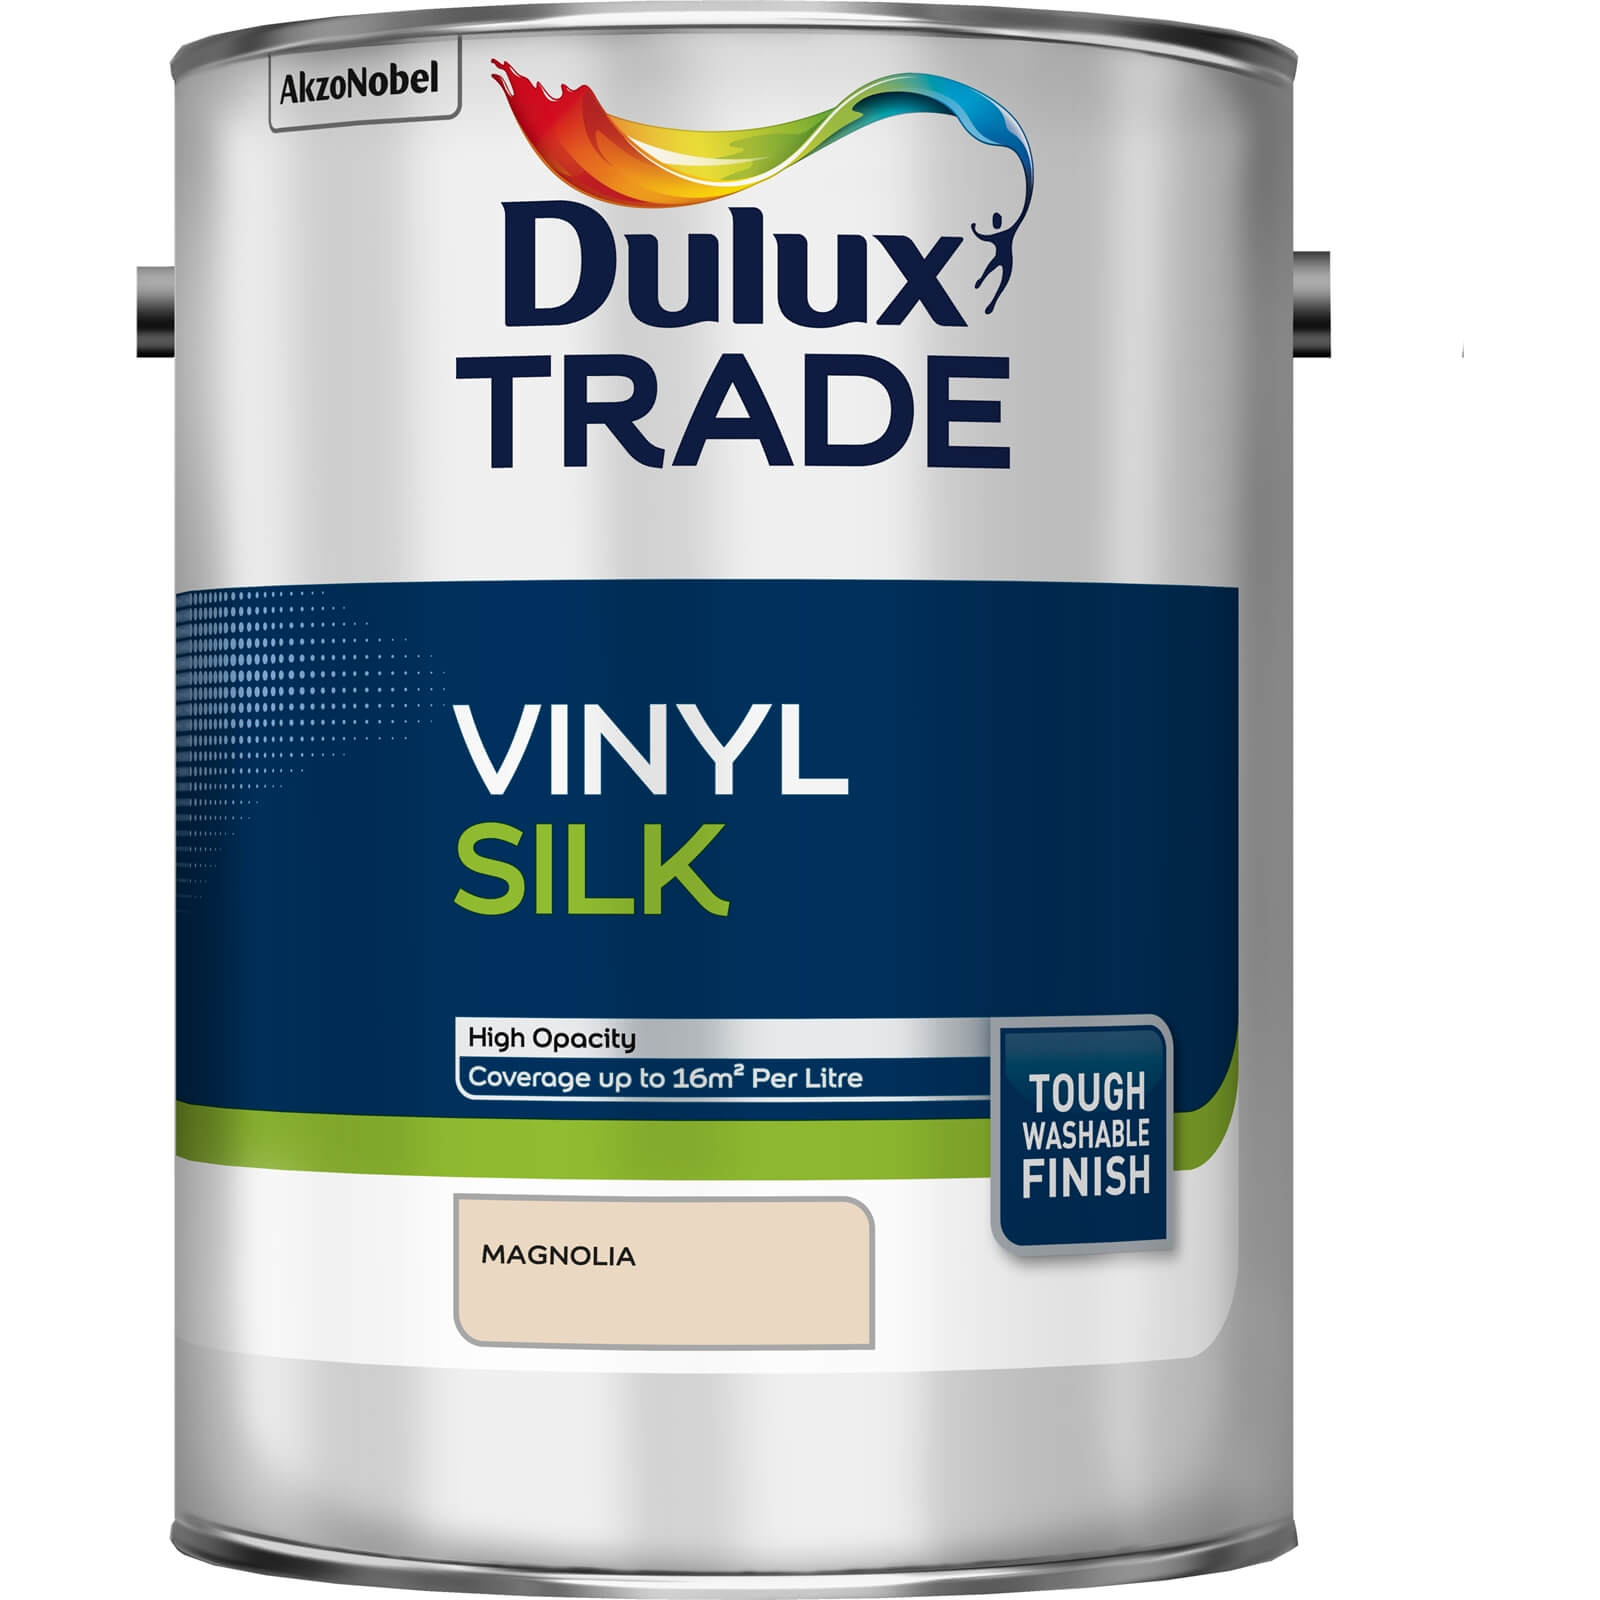 Dulux Trade Vinyl Silk Magnolia - 5L